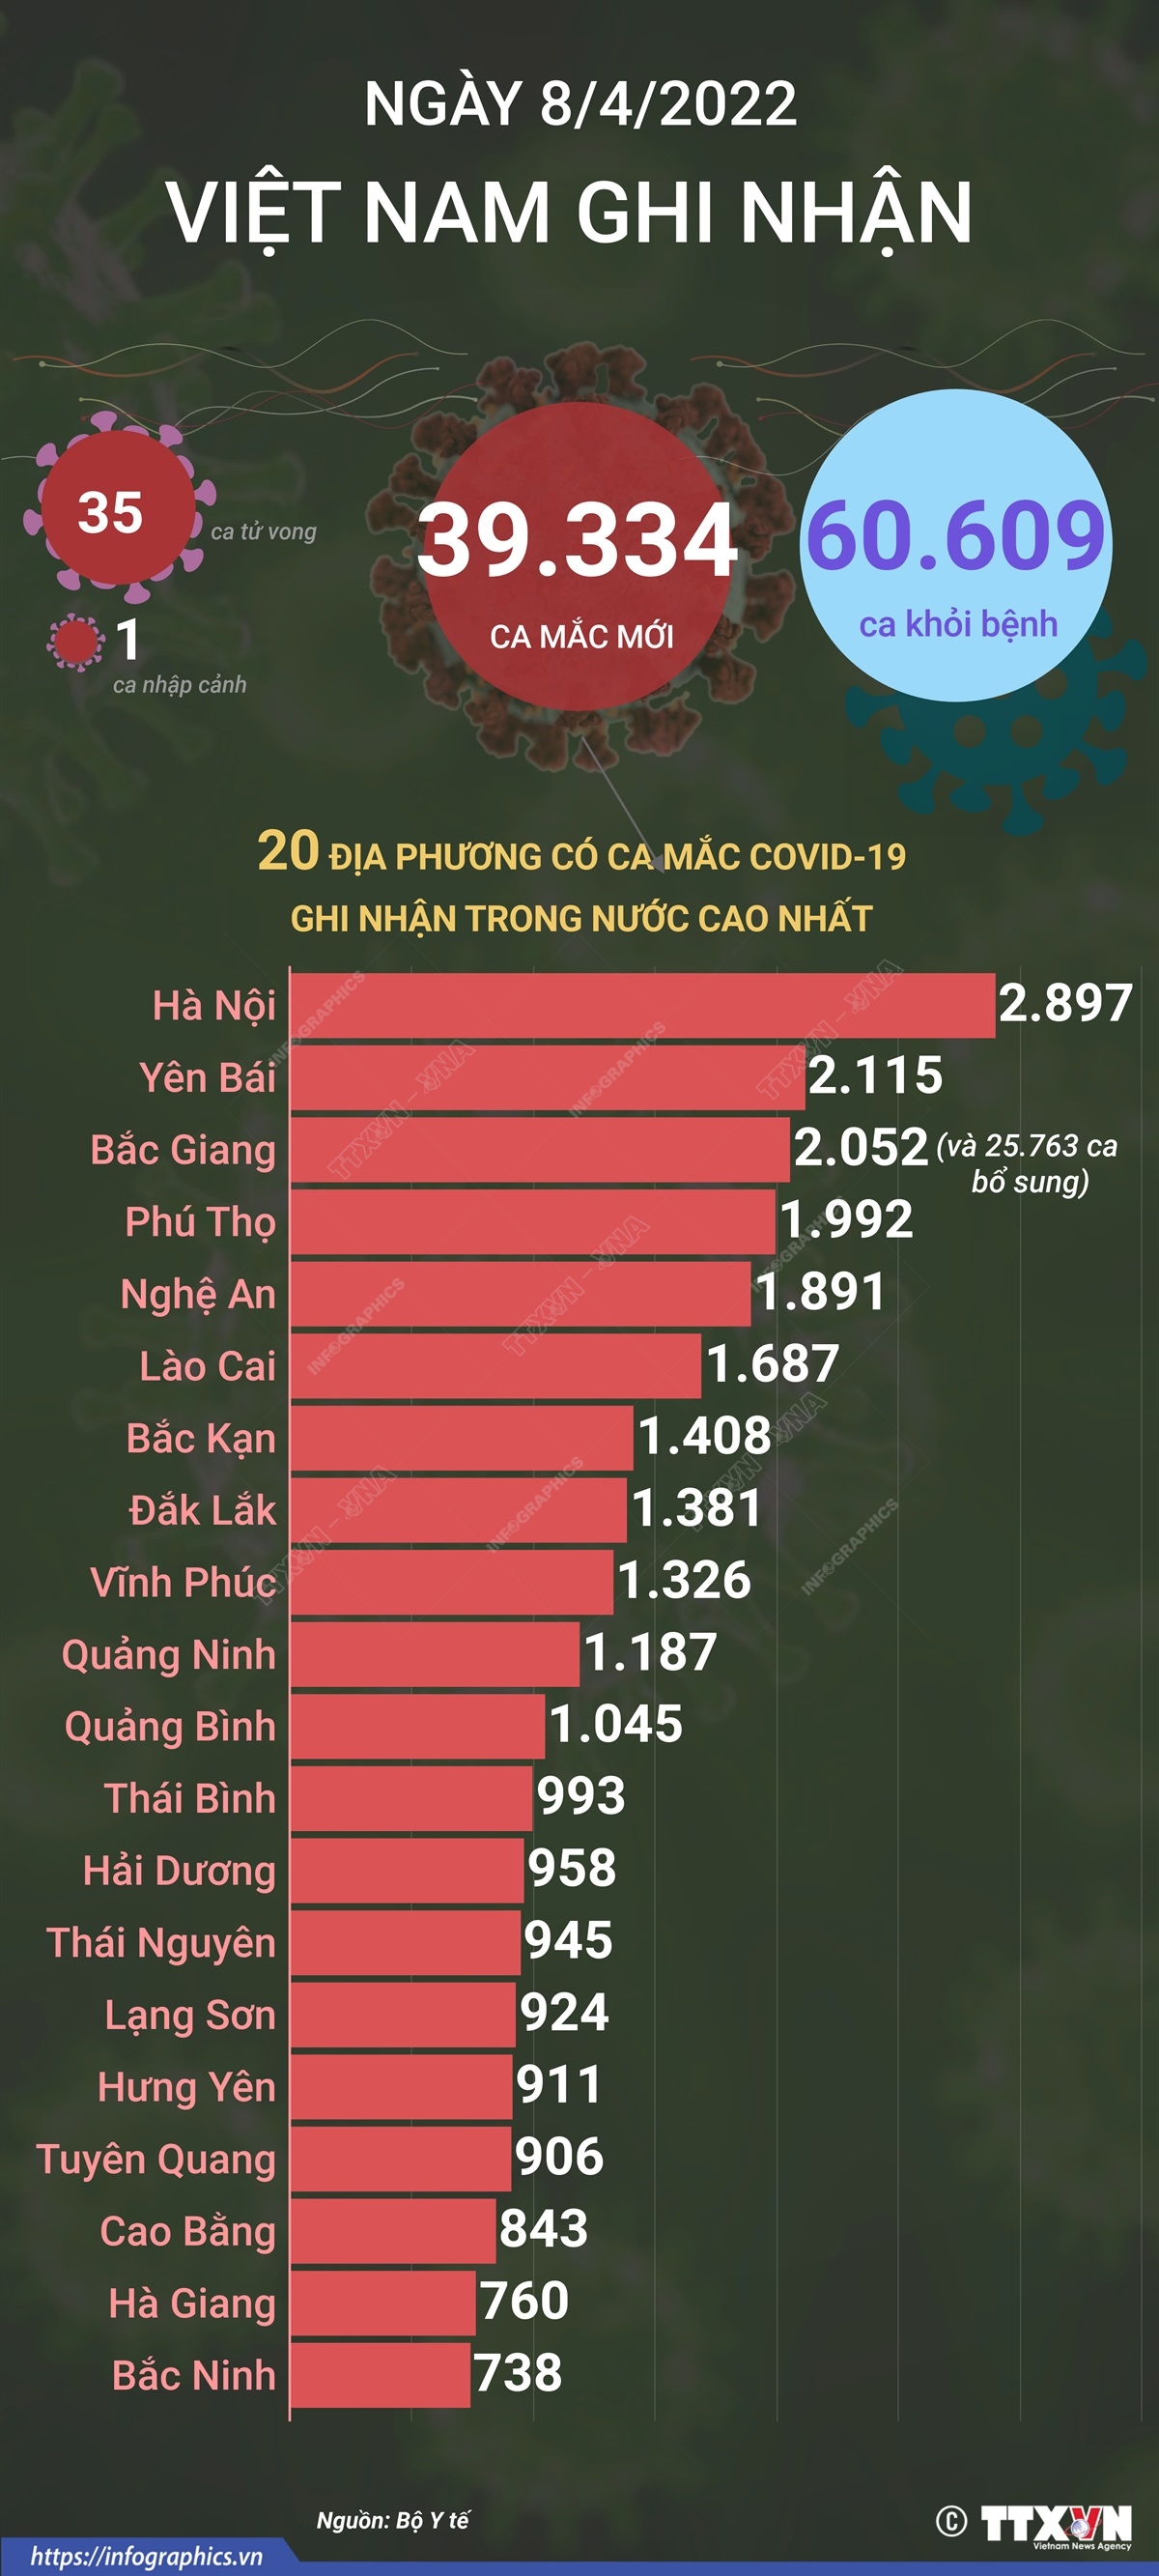 Ngày 8/4, Việt Nam ghi nhận 39.334 ca mắc mới COVID-19